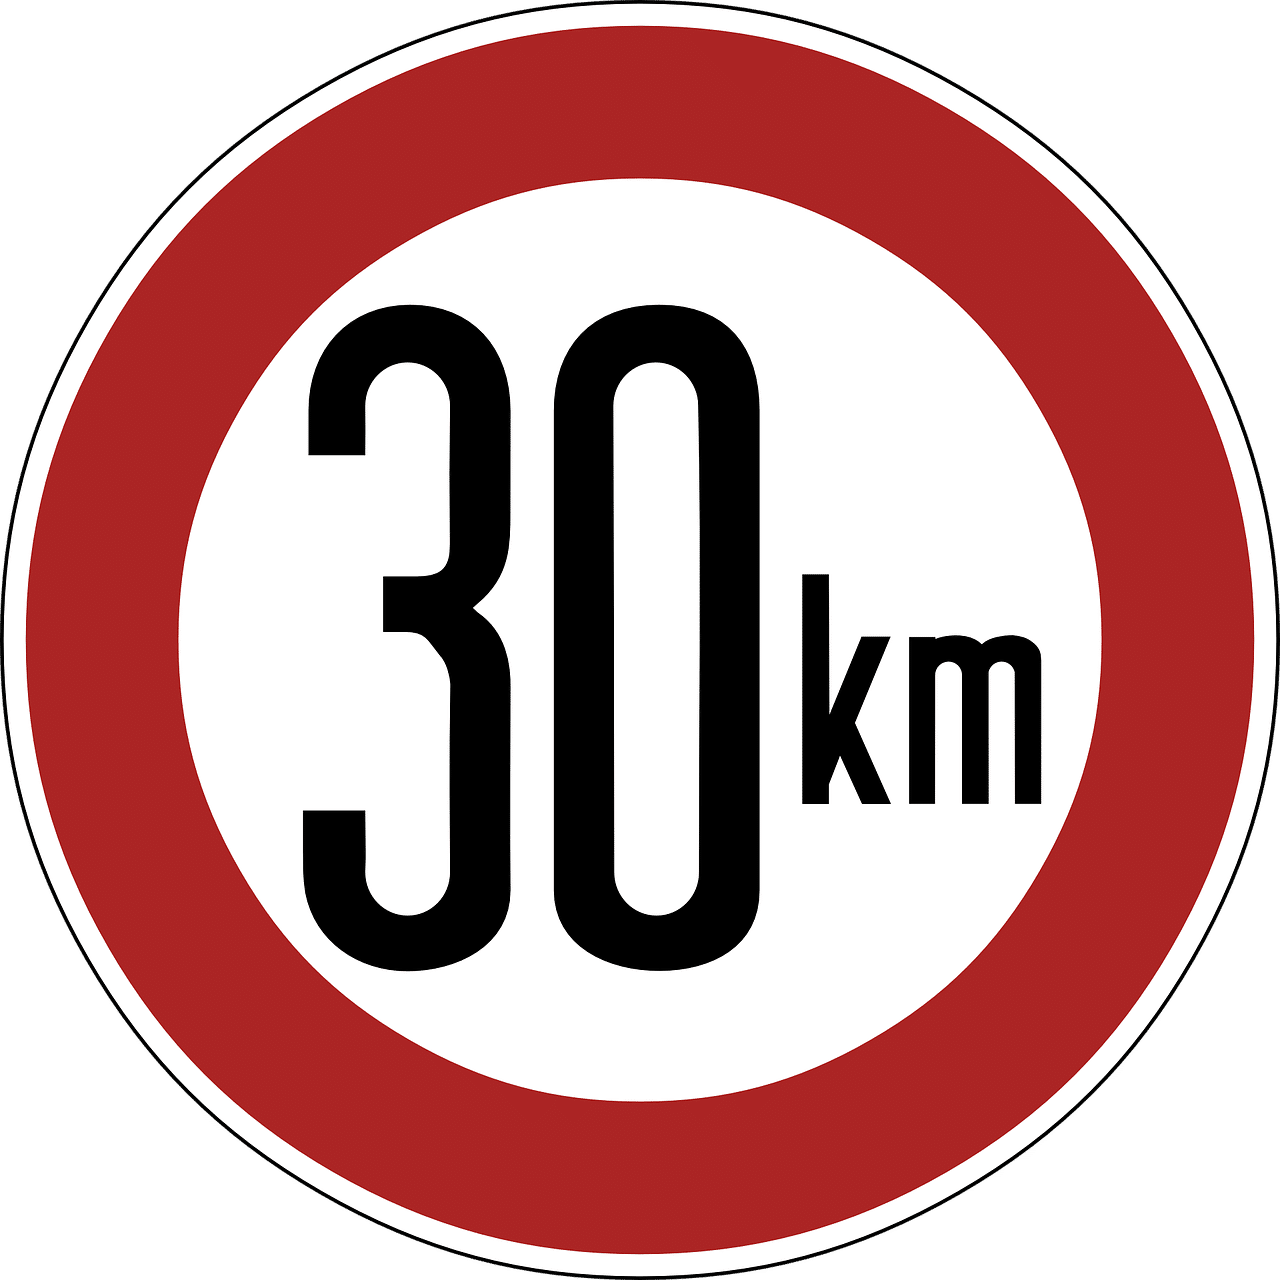 speed limit, sign, 30 km-909986.jpg